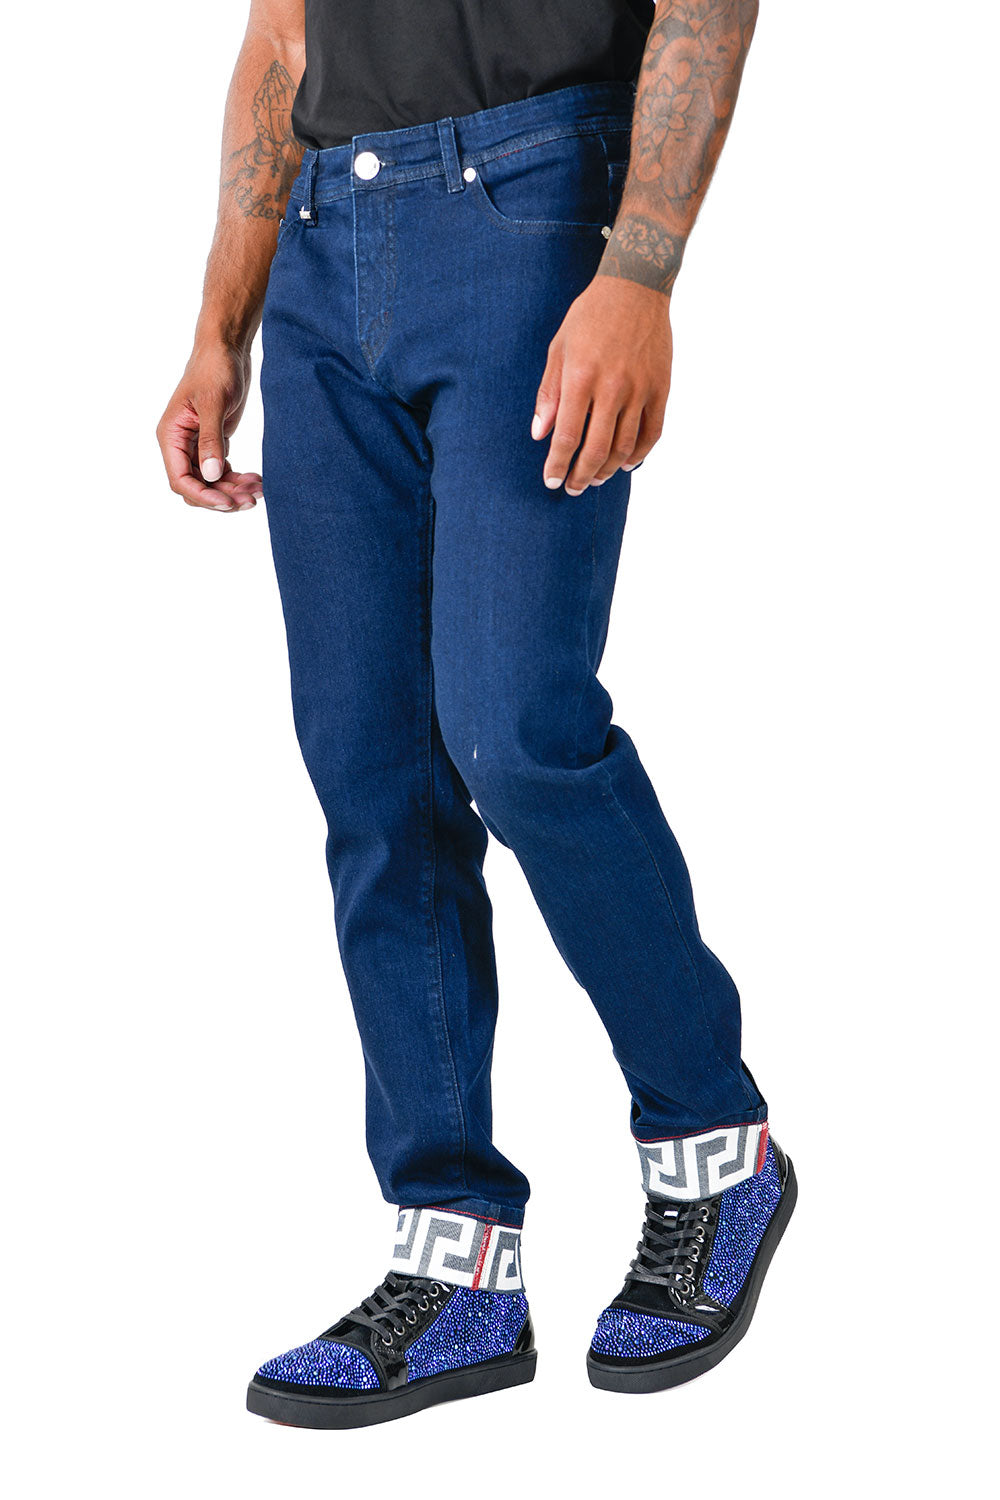 BARABAS Men's Greek Key Pattern Design Luxory Jeans SN8858 Blue